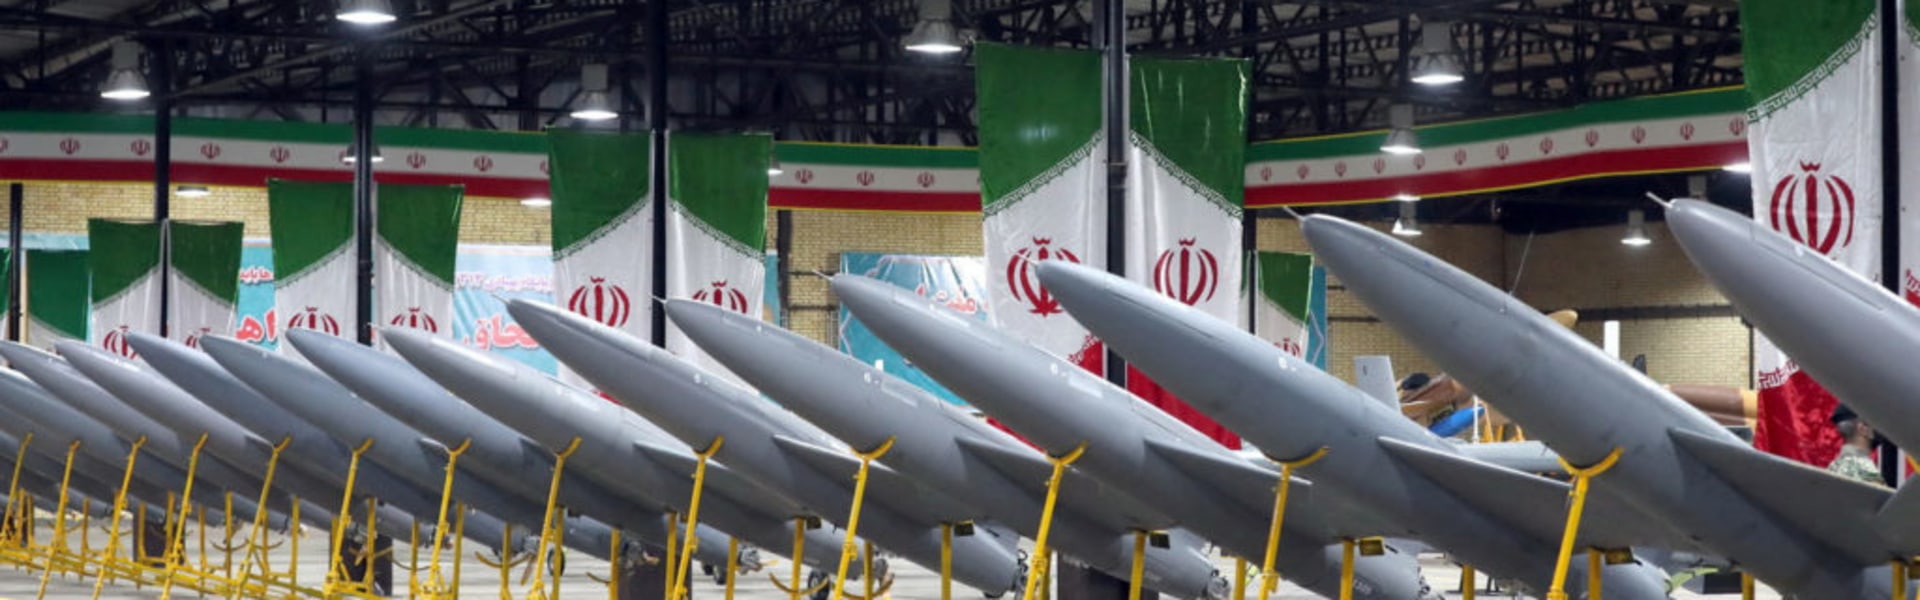 ארסנל נשק בלתי נגמר / צילום: Reuters, Iranian Army/WANA